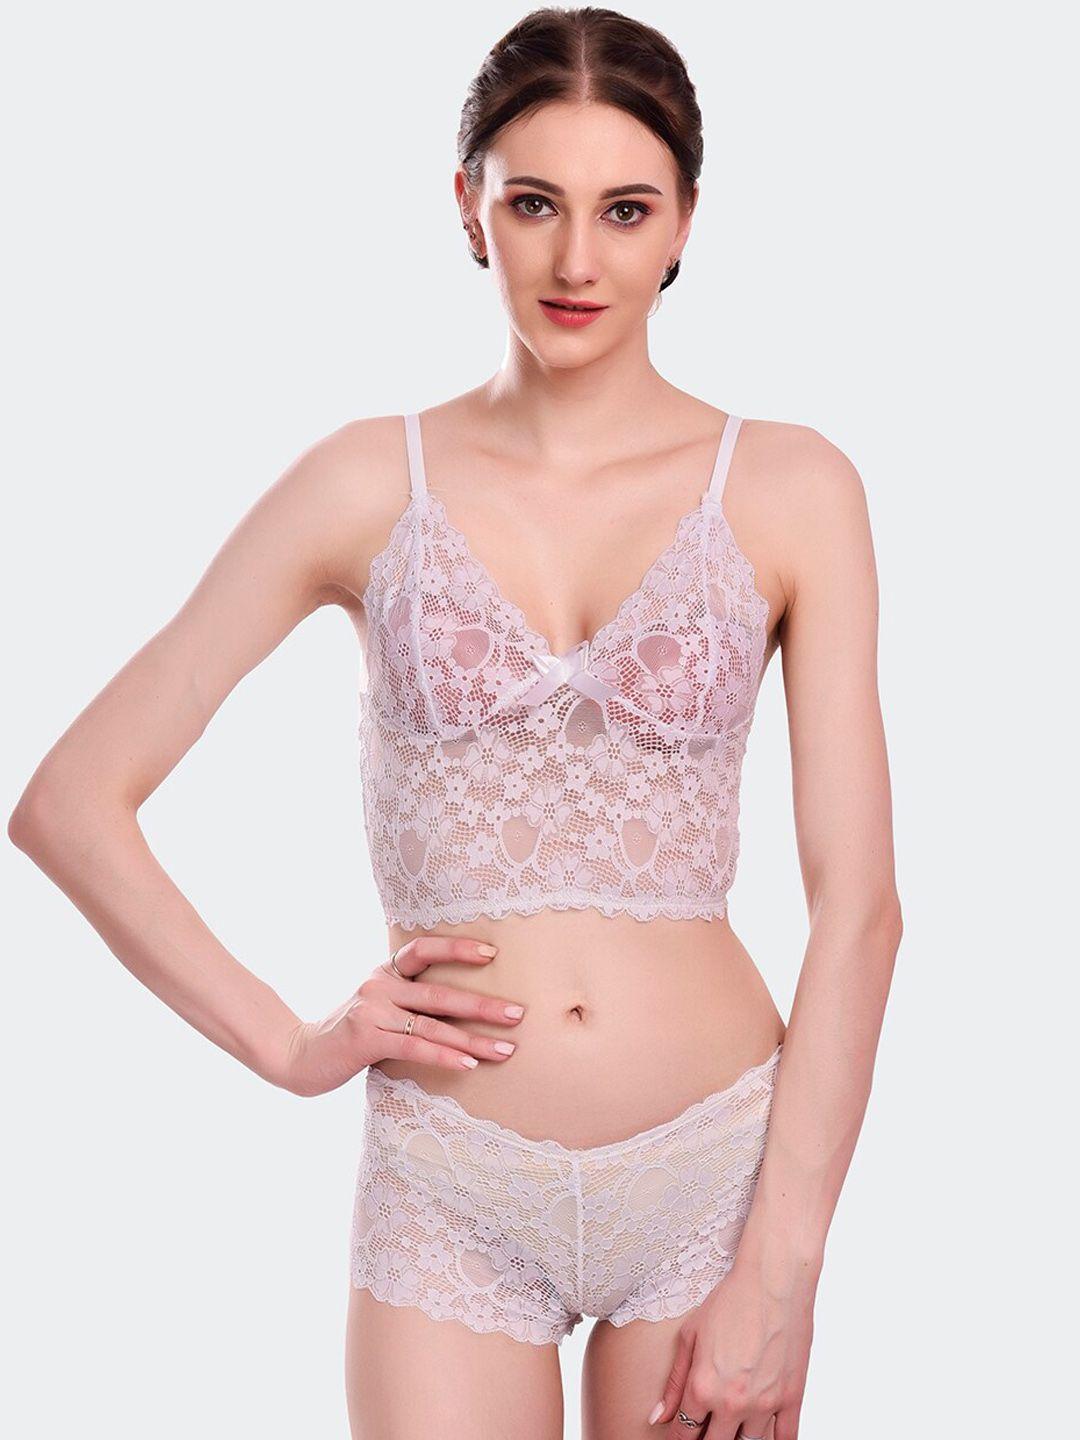 fleurt white self-design lace lingerie set fleurt-set-170-wh-m